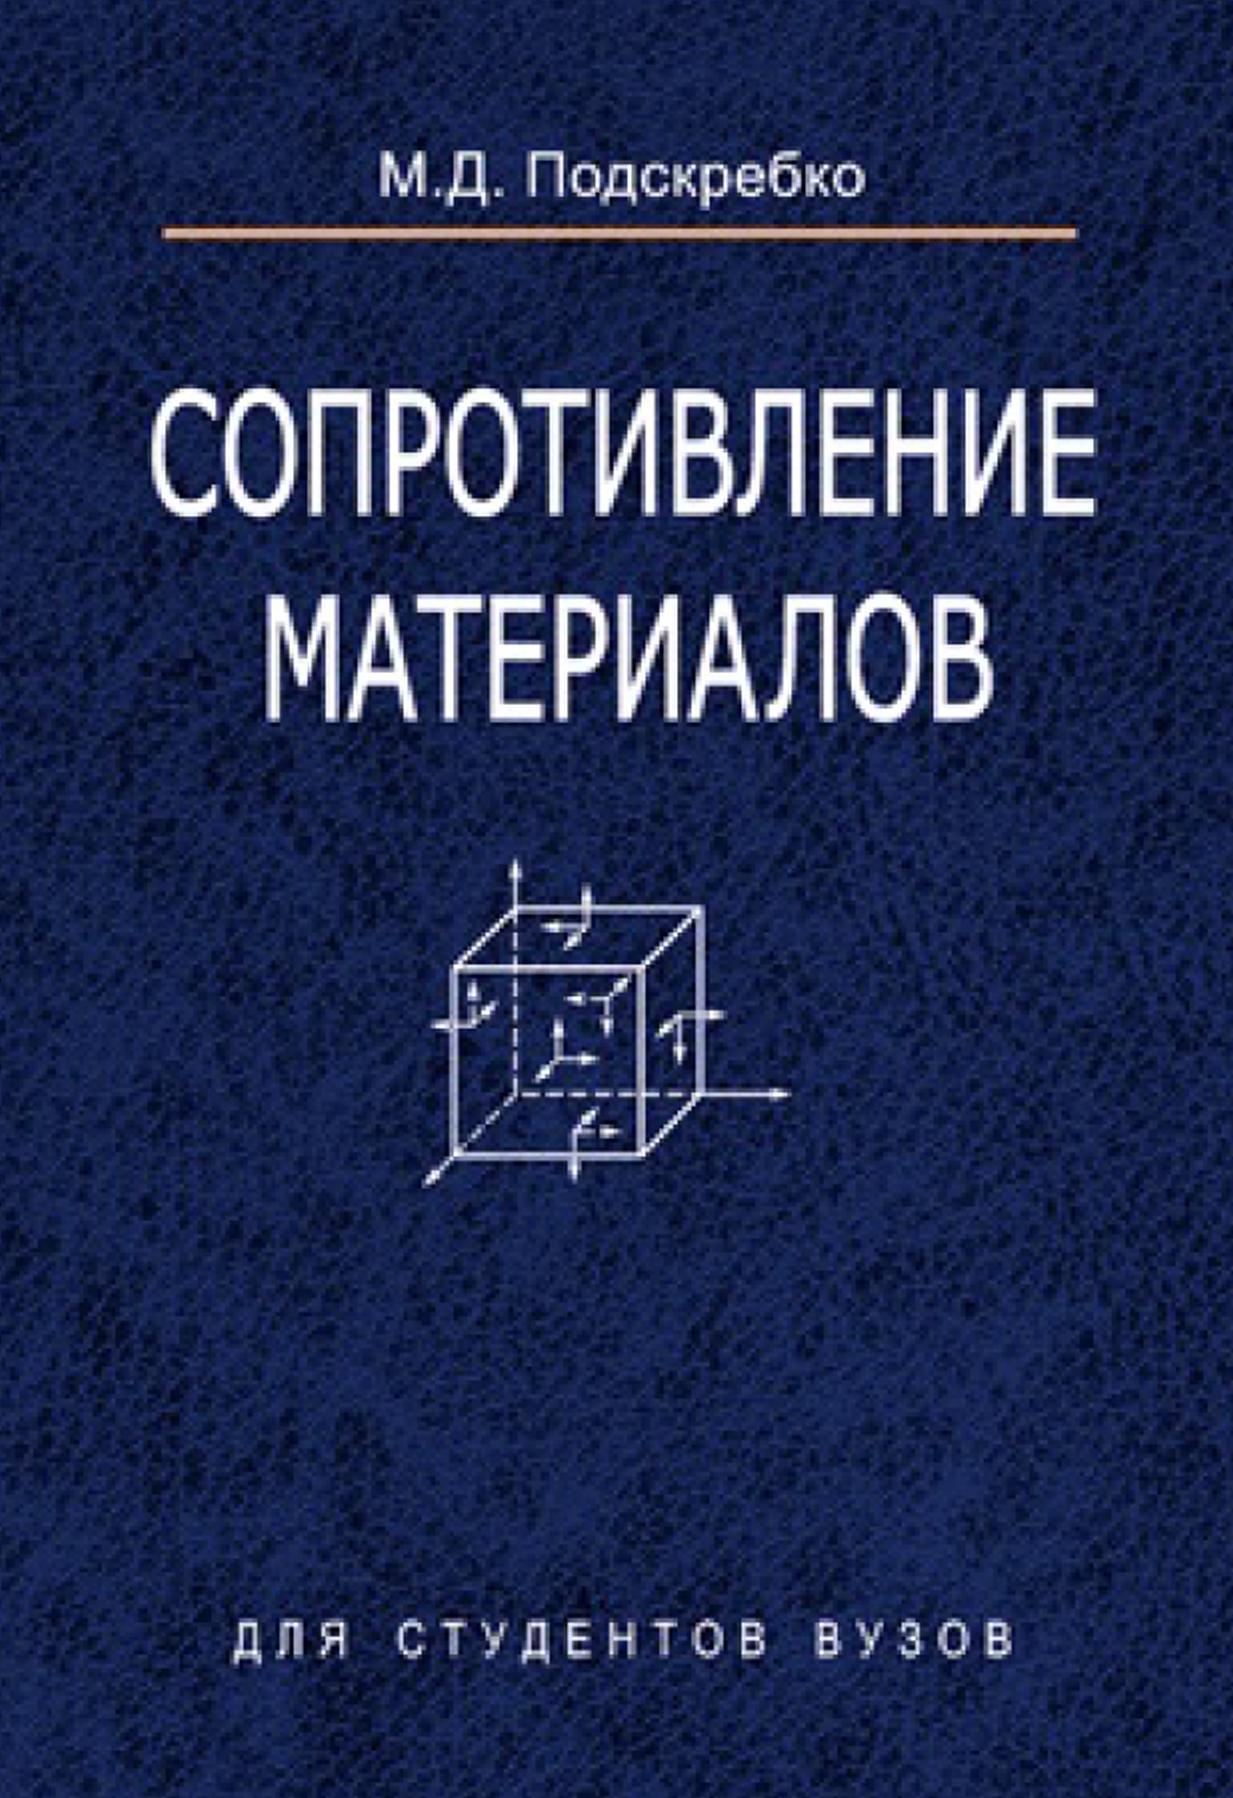 Сопротивление материалов, Учебник, Подскребко М.Д., 2007